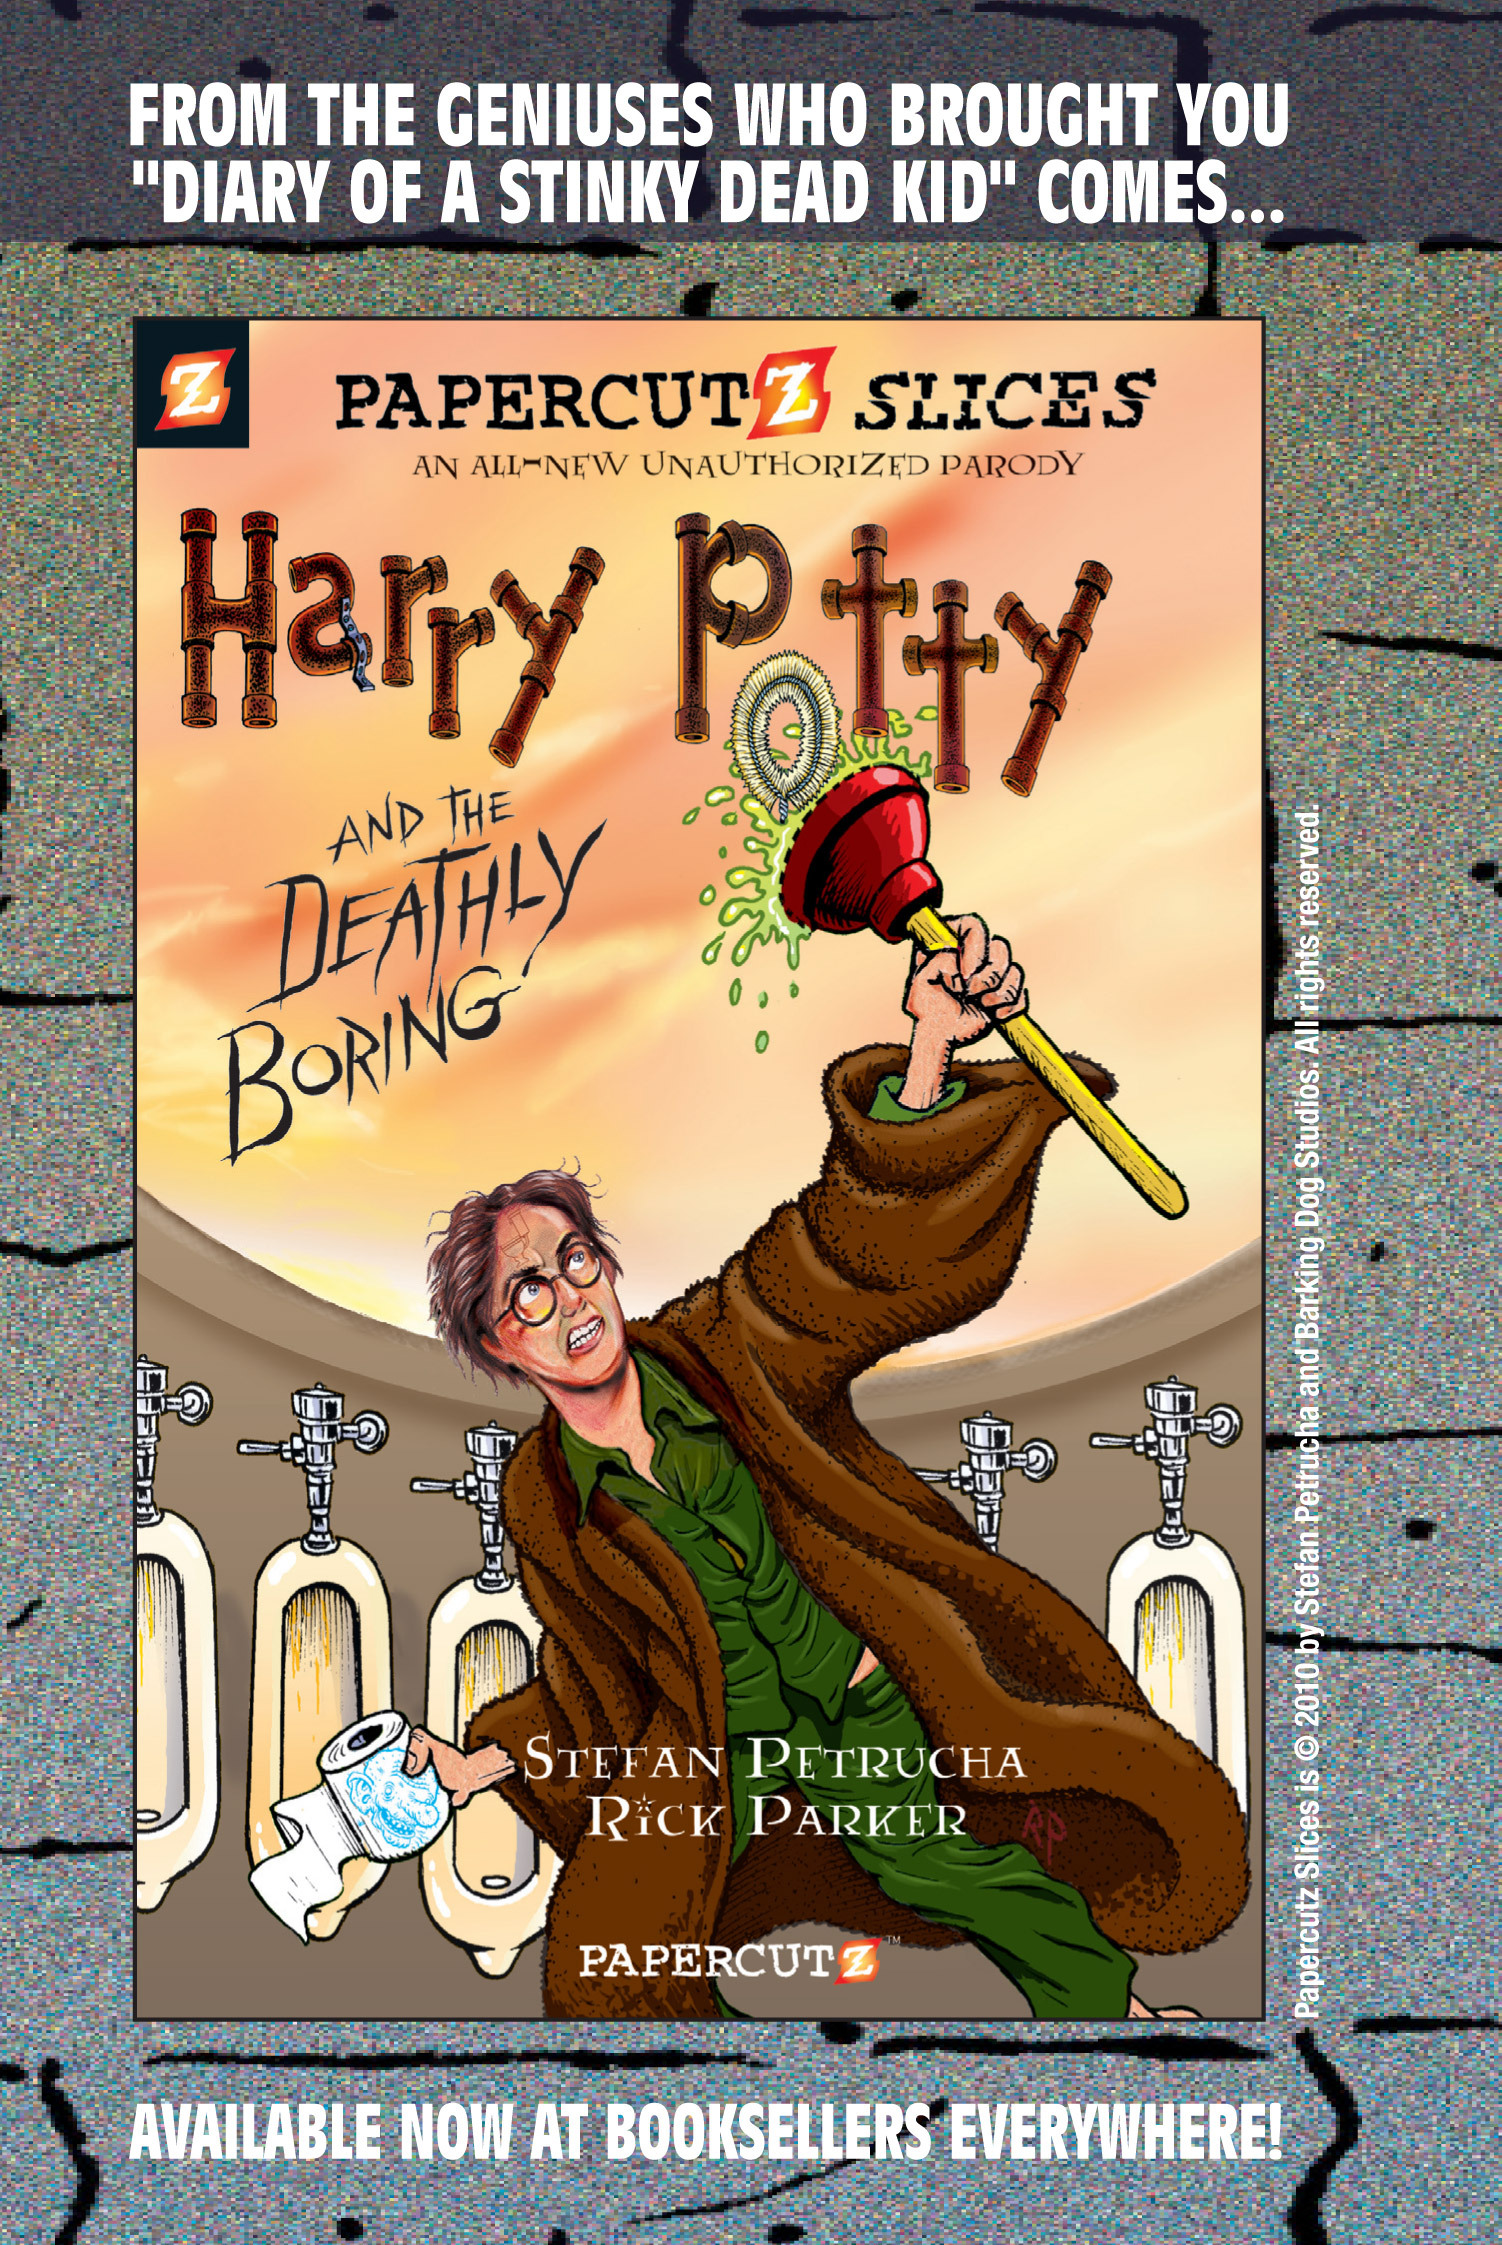 Read online Nancy Drew comic -  Issue #1 - 96